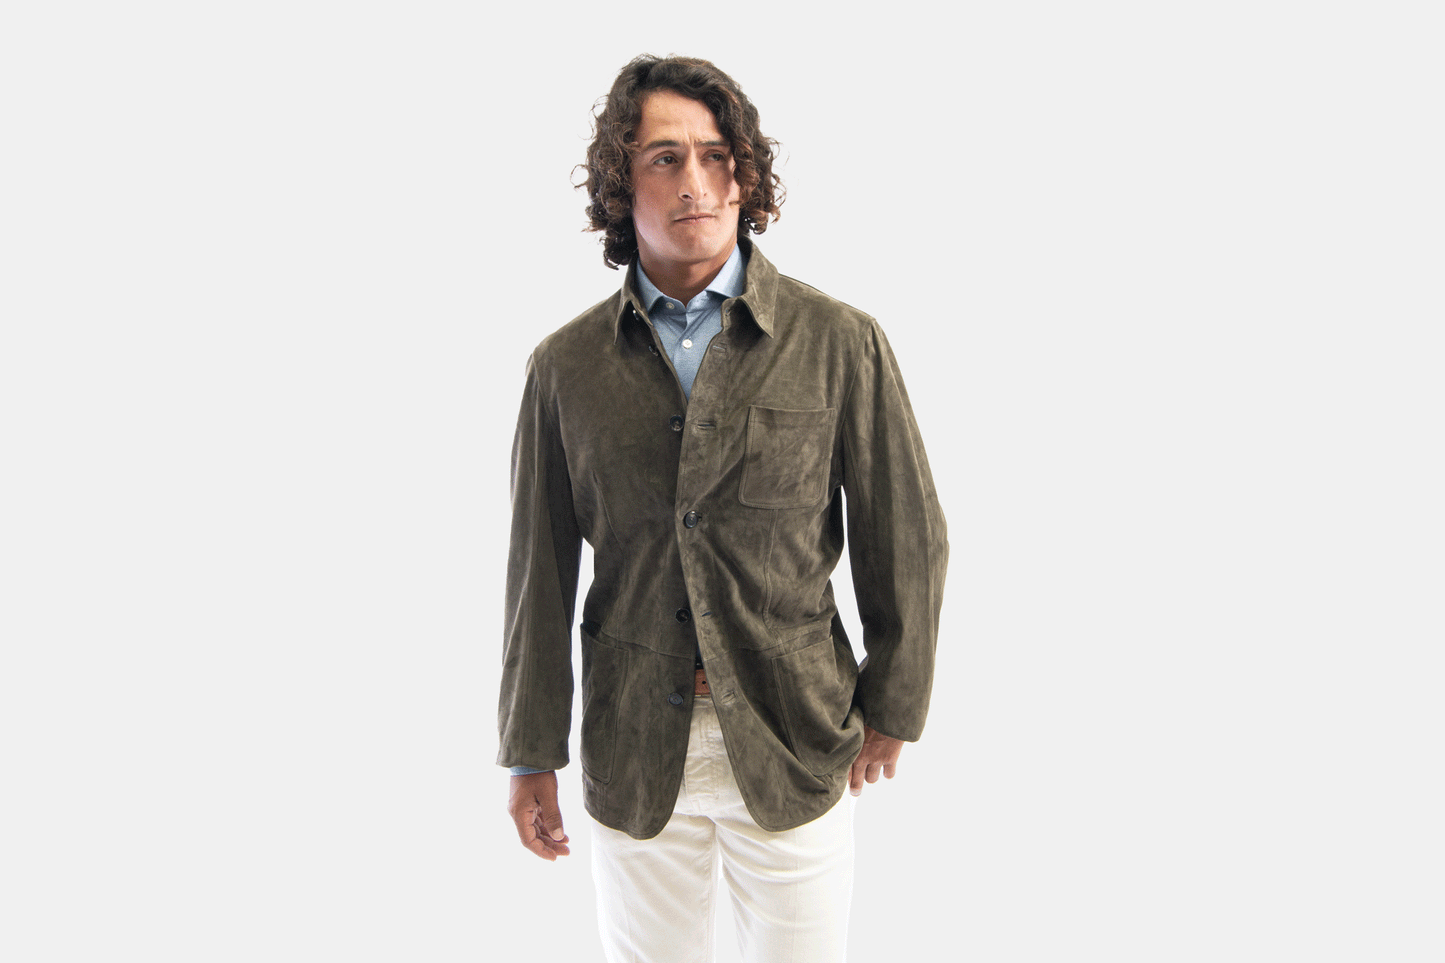 khakis of Carmel - taupe suede jacket